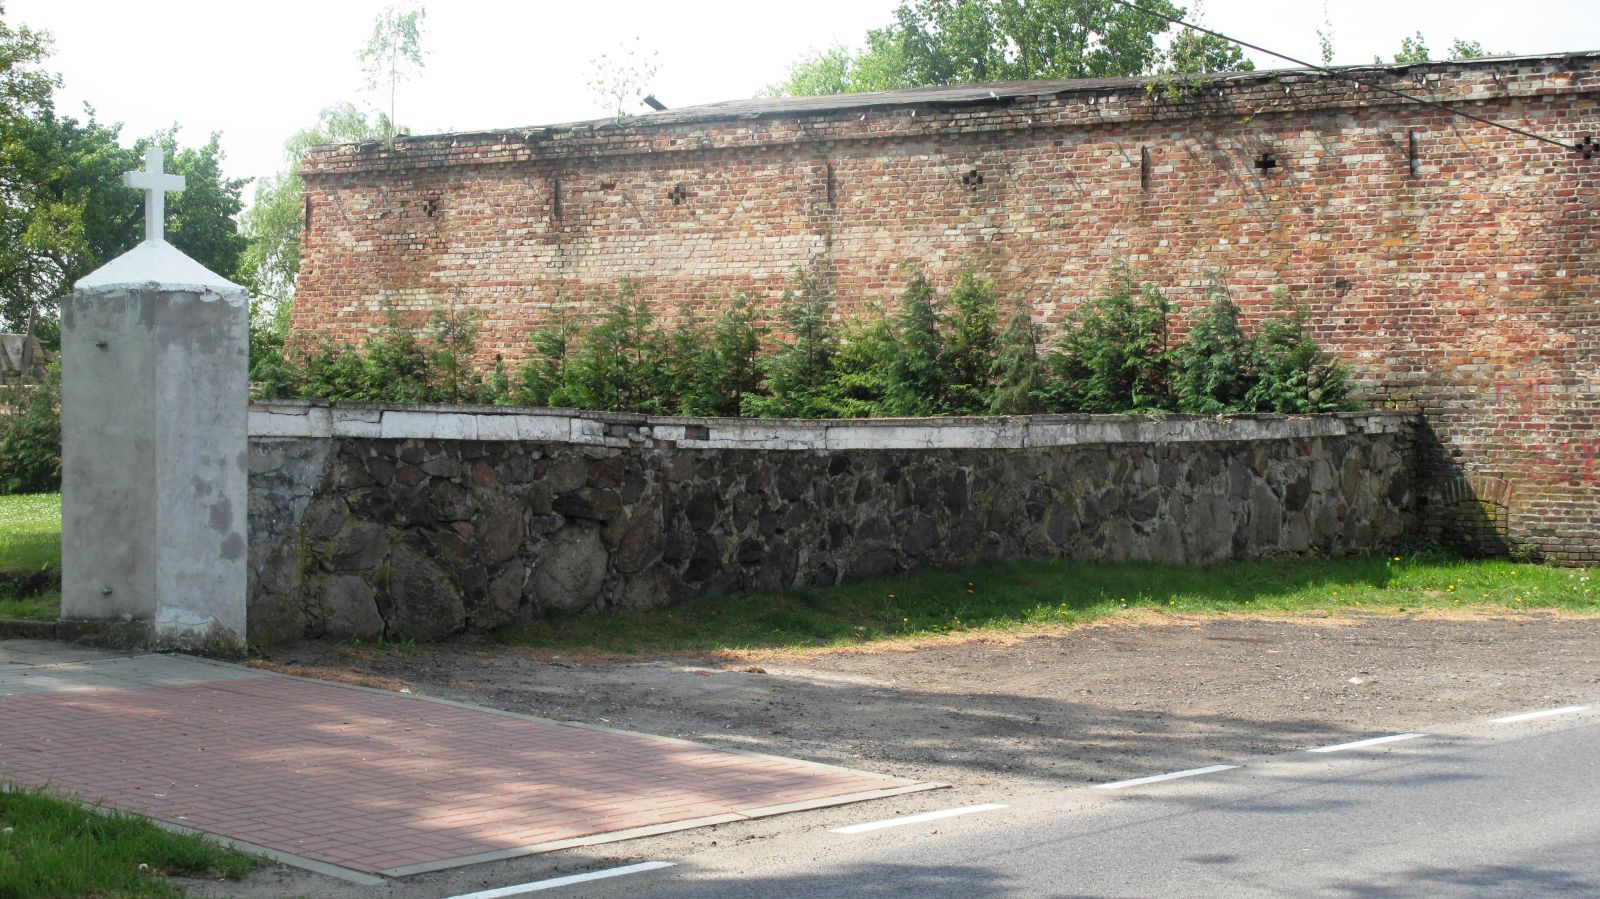 Mur przykościelny w Sarbinowie wymaga remontu (link prowadzi do powiększonej wersji zdjęcia)